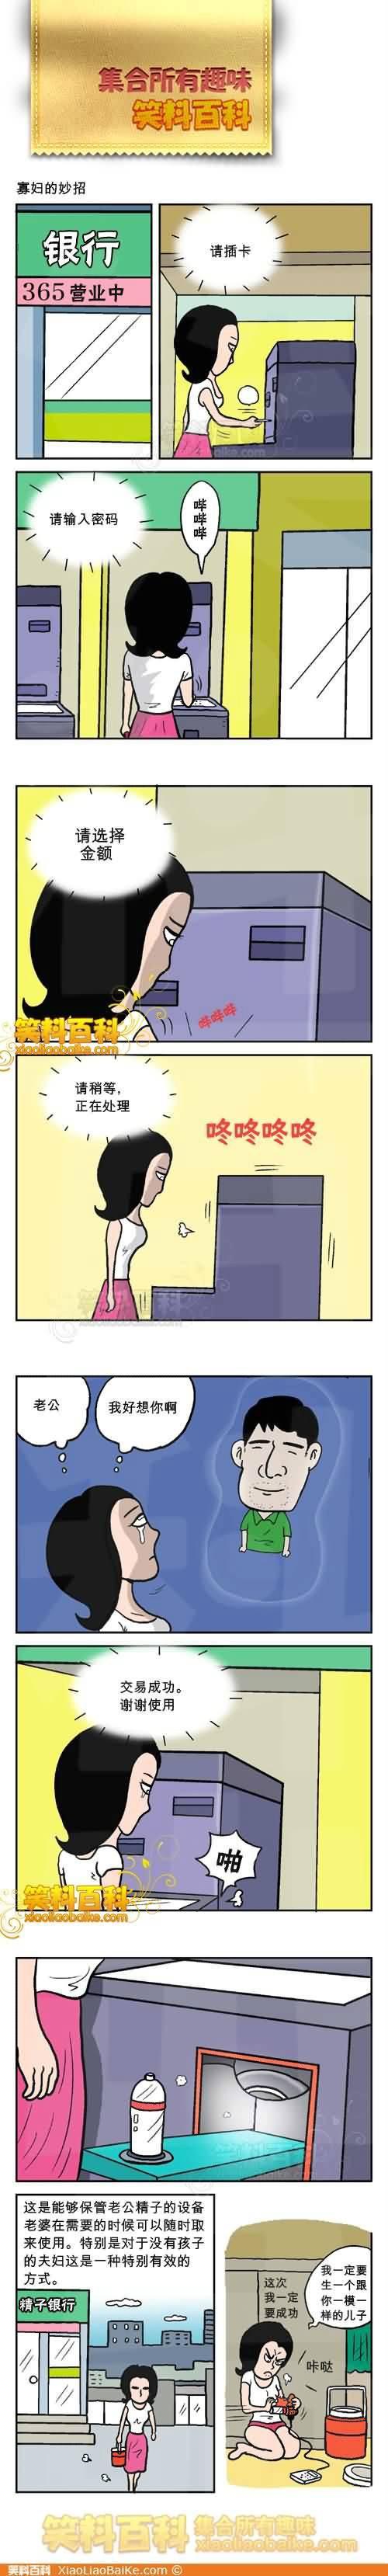 邪恶漫画爆笑囧图第290刊：三国那点事